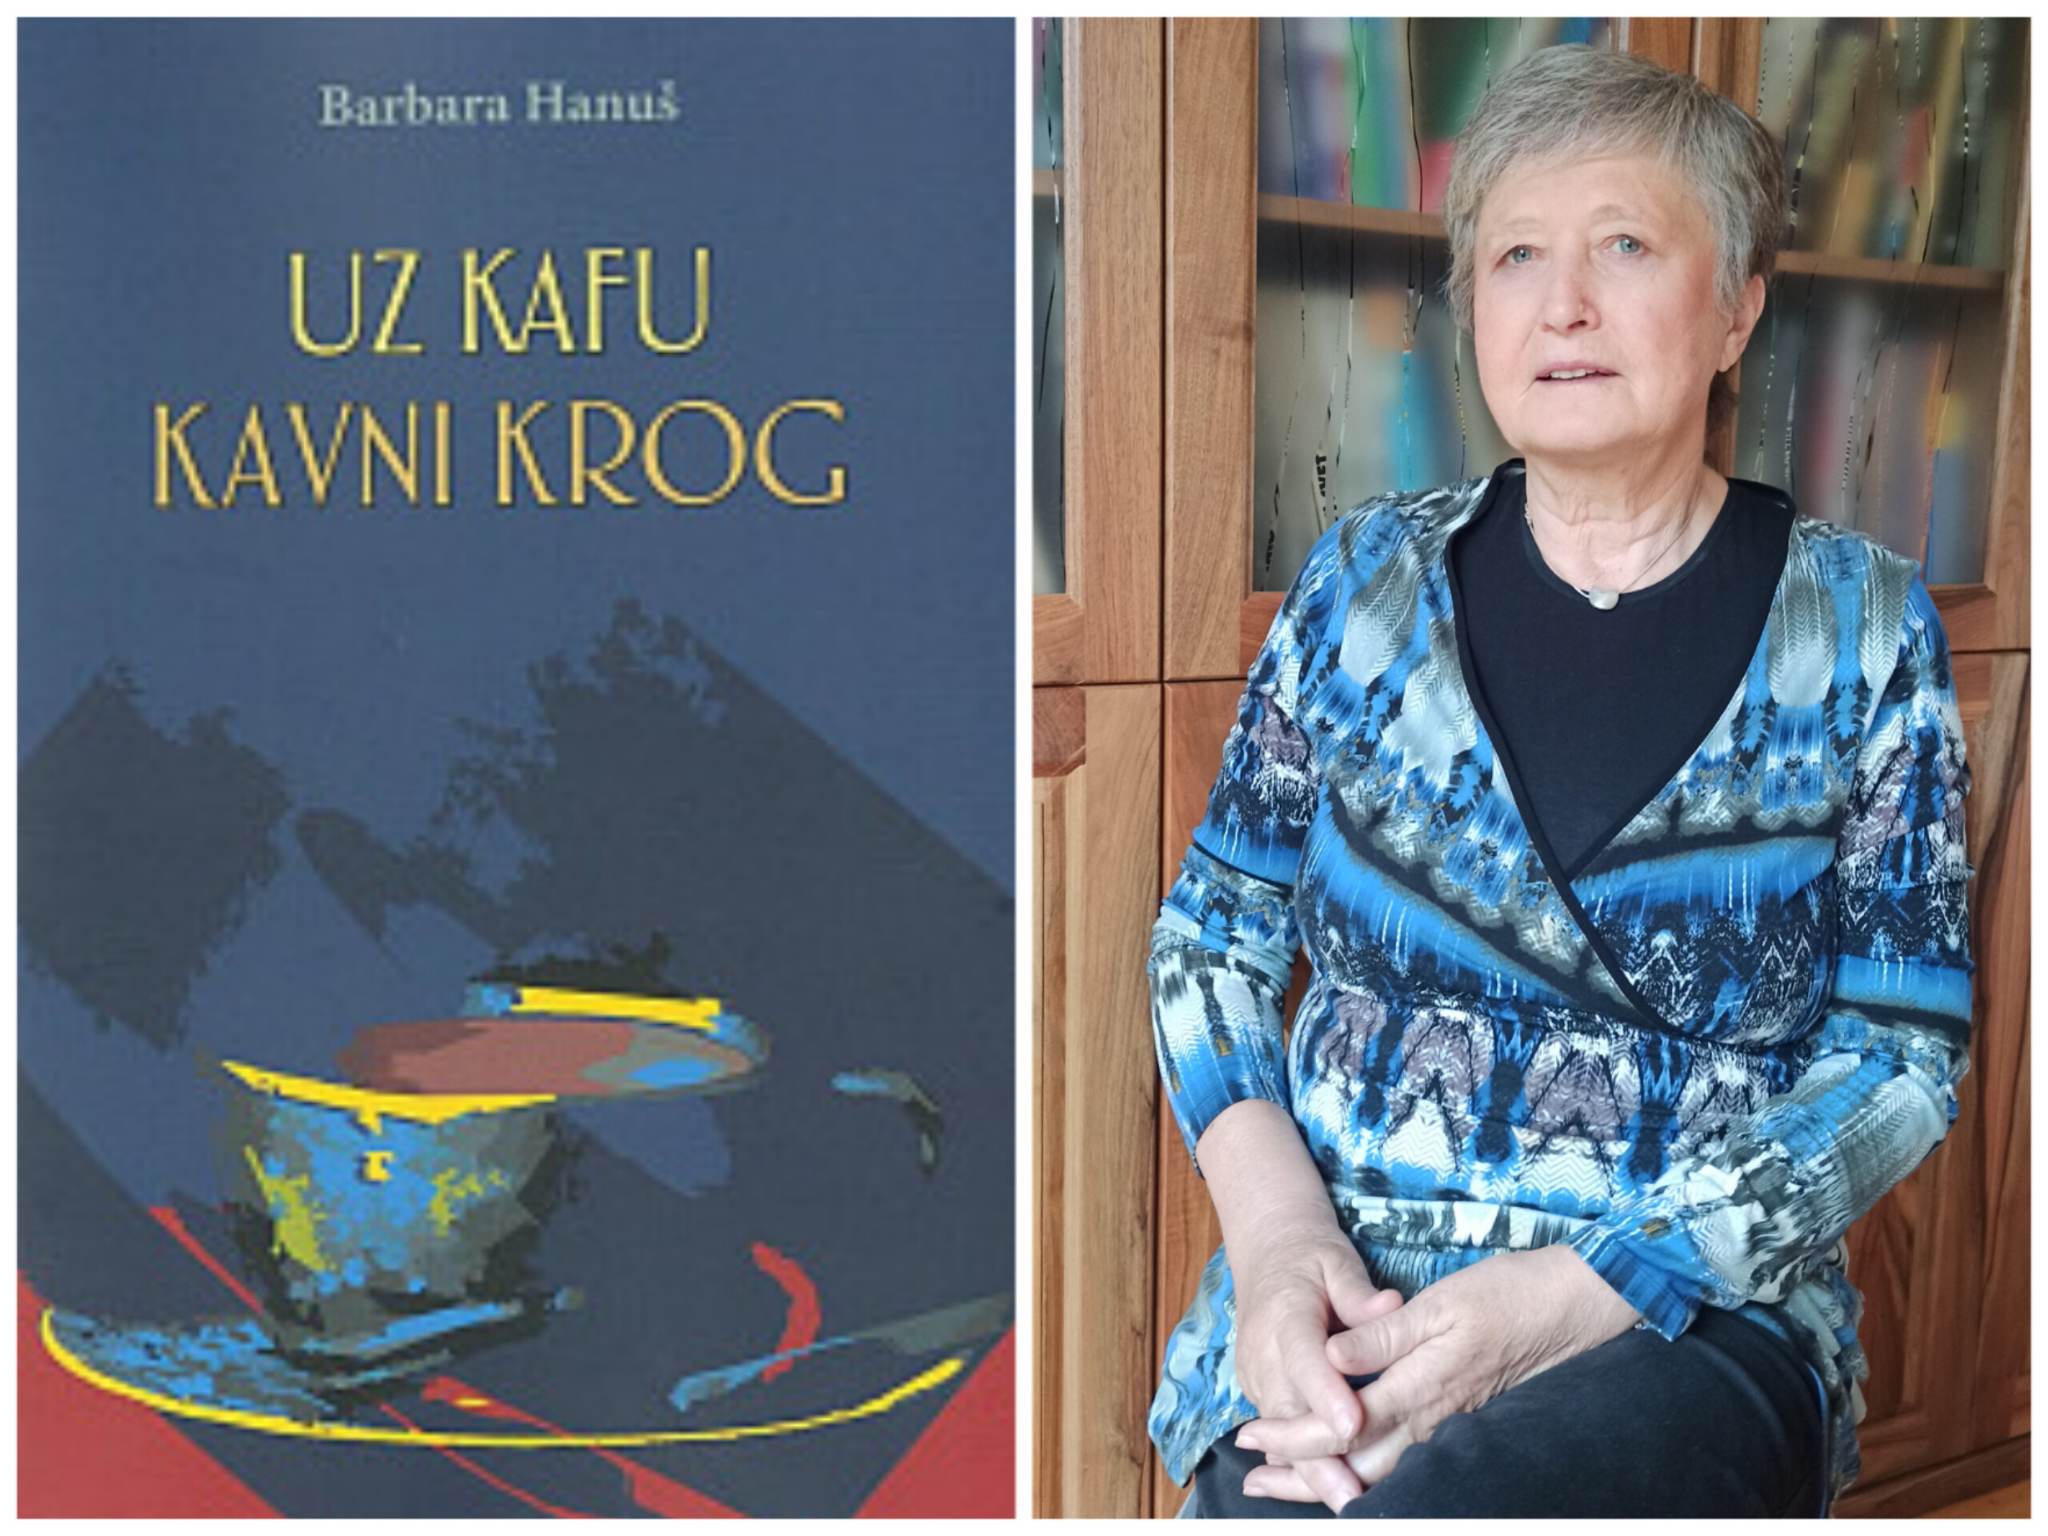 Promocija knjige "Uz kafu" slovenačke književnice Barbare Hanuš održana u Pančevu